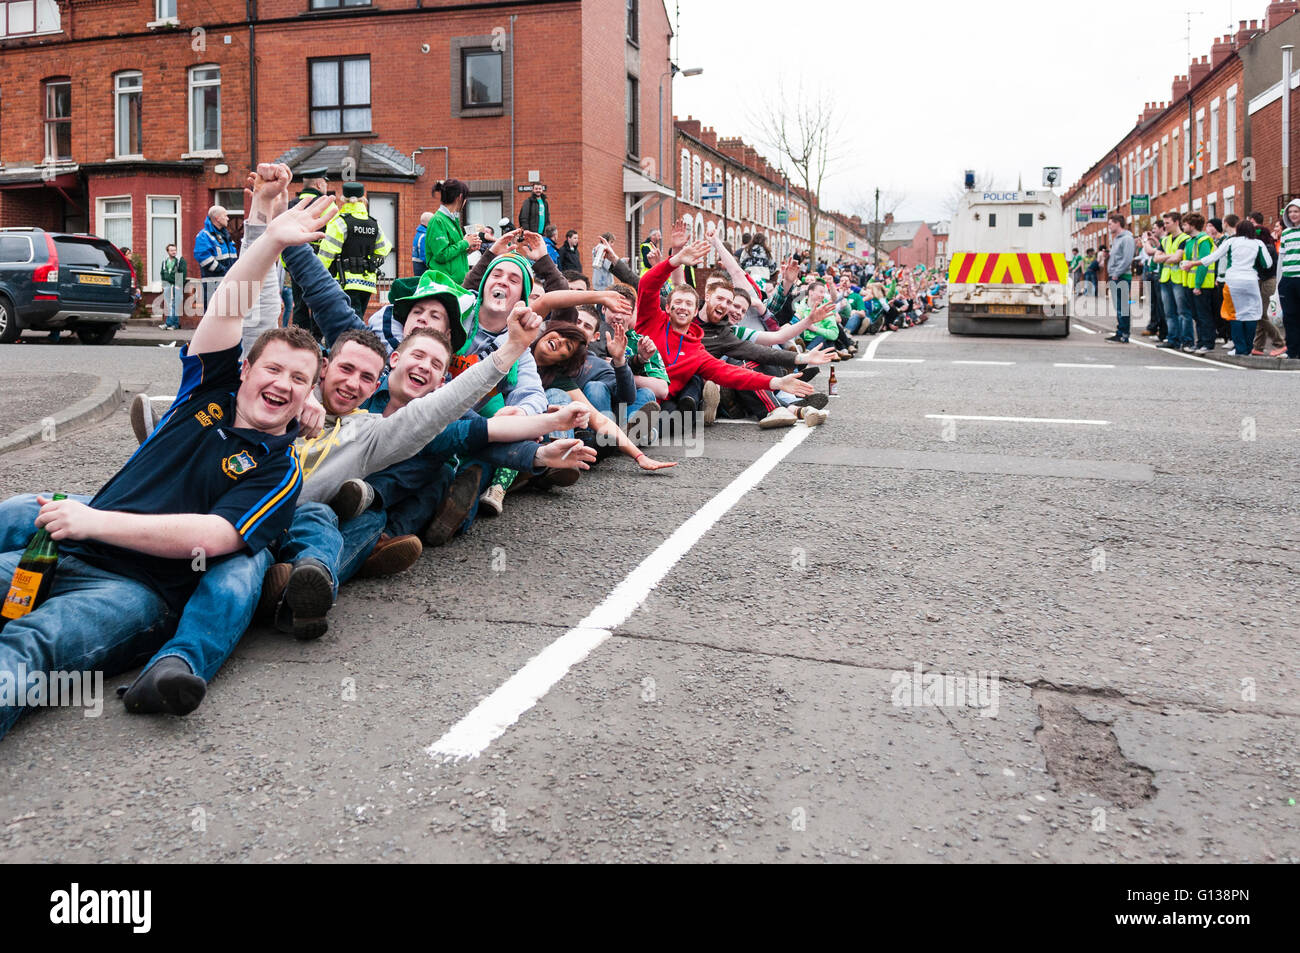 Belfast, Irlande du Nord. 17 mars 2011 - Les élèves célèbrent le Jour de la Saint Patrick en exécutant 'Rock The Boat' un certain nombre de rues dans la région de Terre Sainte de Belfast. La zone est surveillée par la police de l'université, PSNI, du personnel et des bénévoles des églises locales, pour essayer de réduire la consommation dans la rue, de la violence et d'autres activités criminelles. Au cours des années précédentes, les élèves ont attaqué la police, et une escalade de violence a éclaté, exigeant des escouades anti-émeute PSNI à être déployés dans la région. Banque D'Images